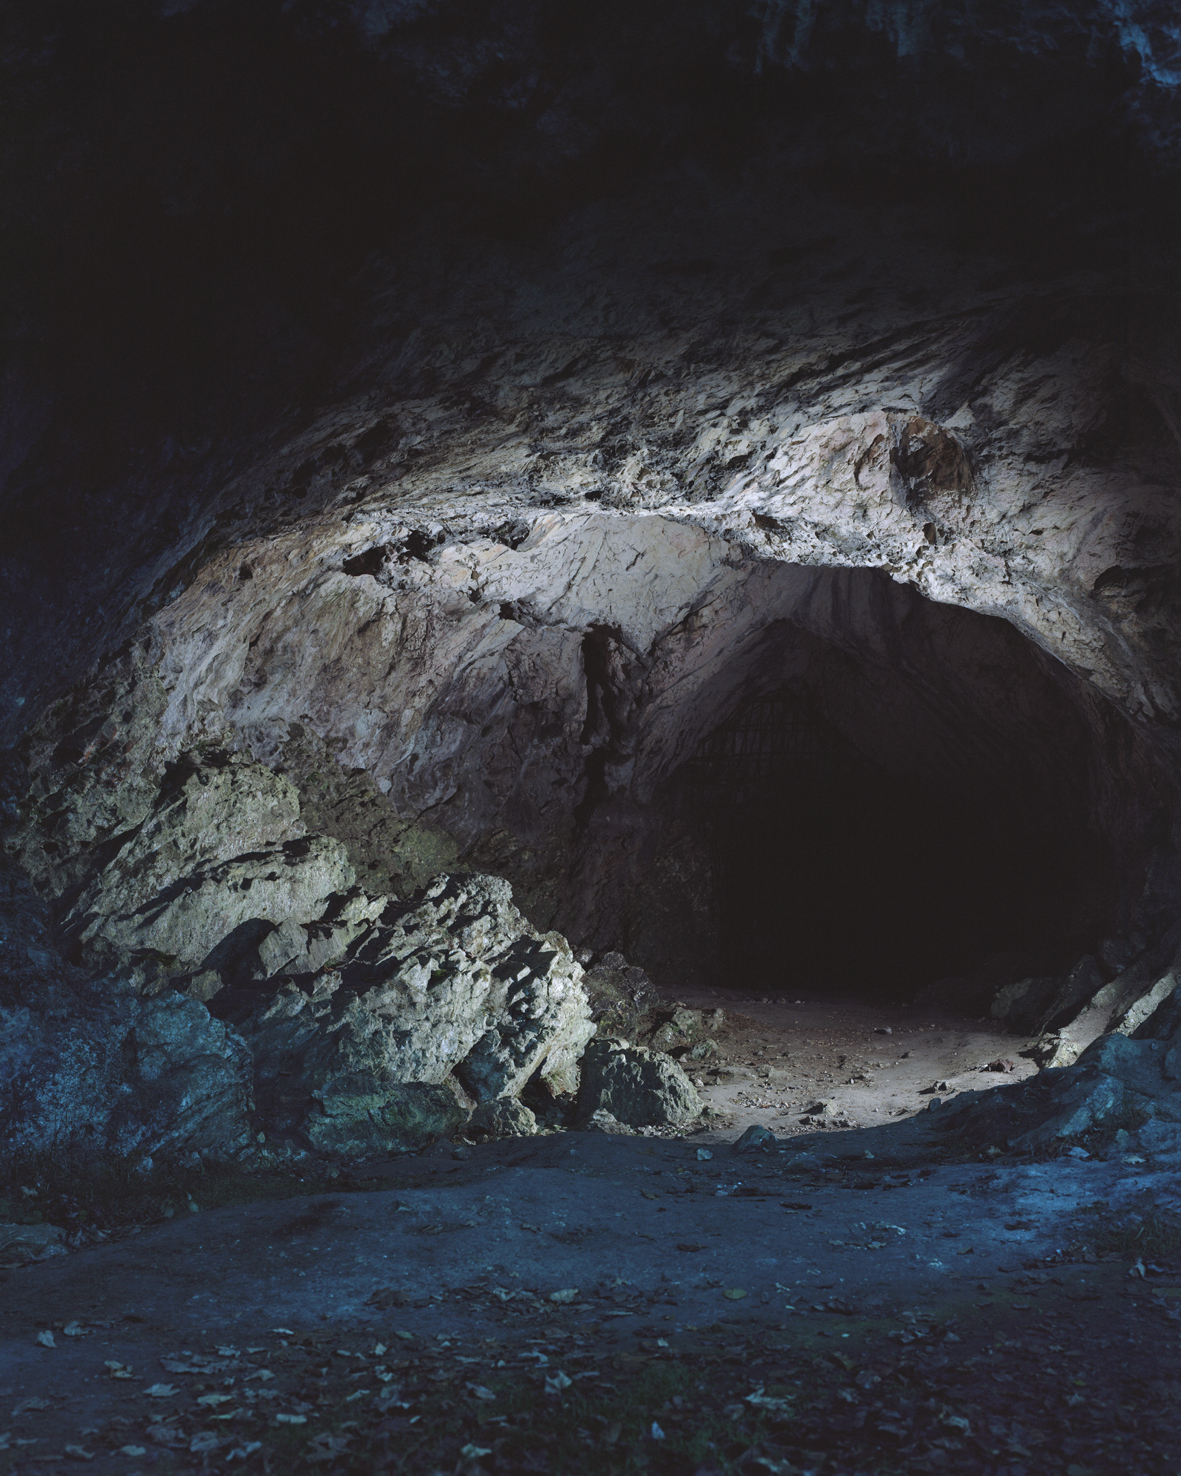 grot waarin een leeuwmens-beeld is gevonden